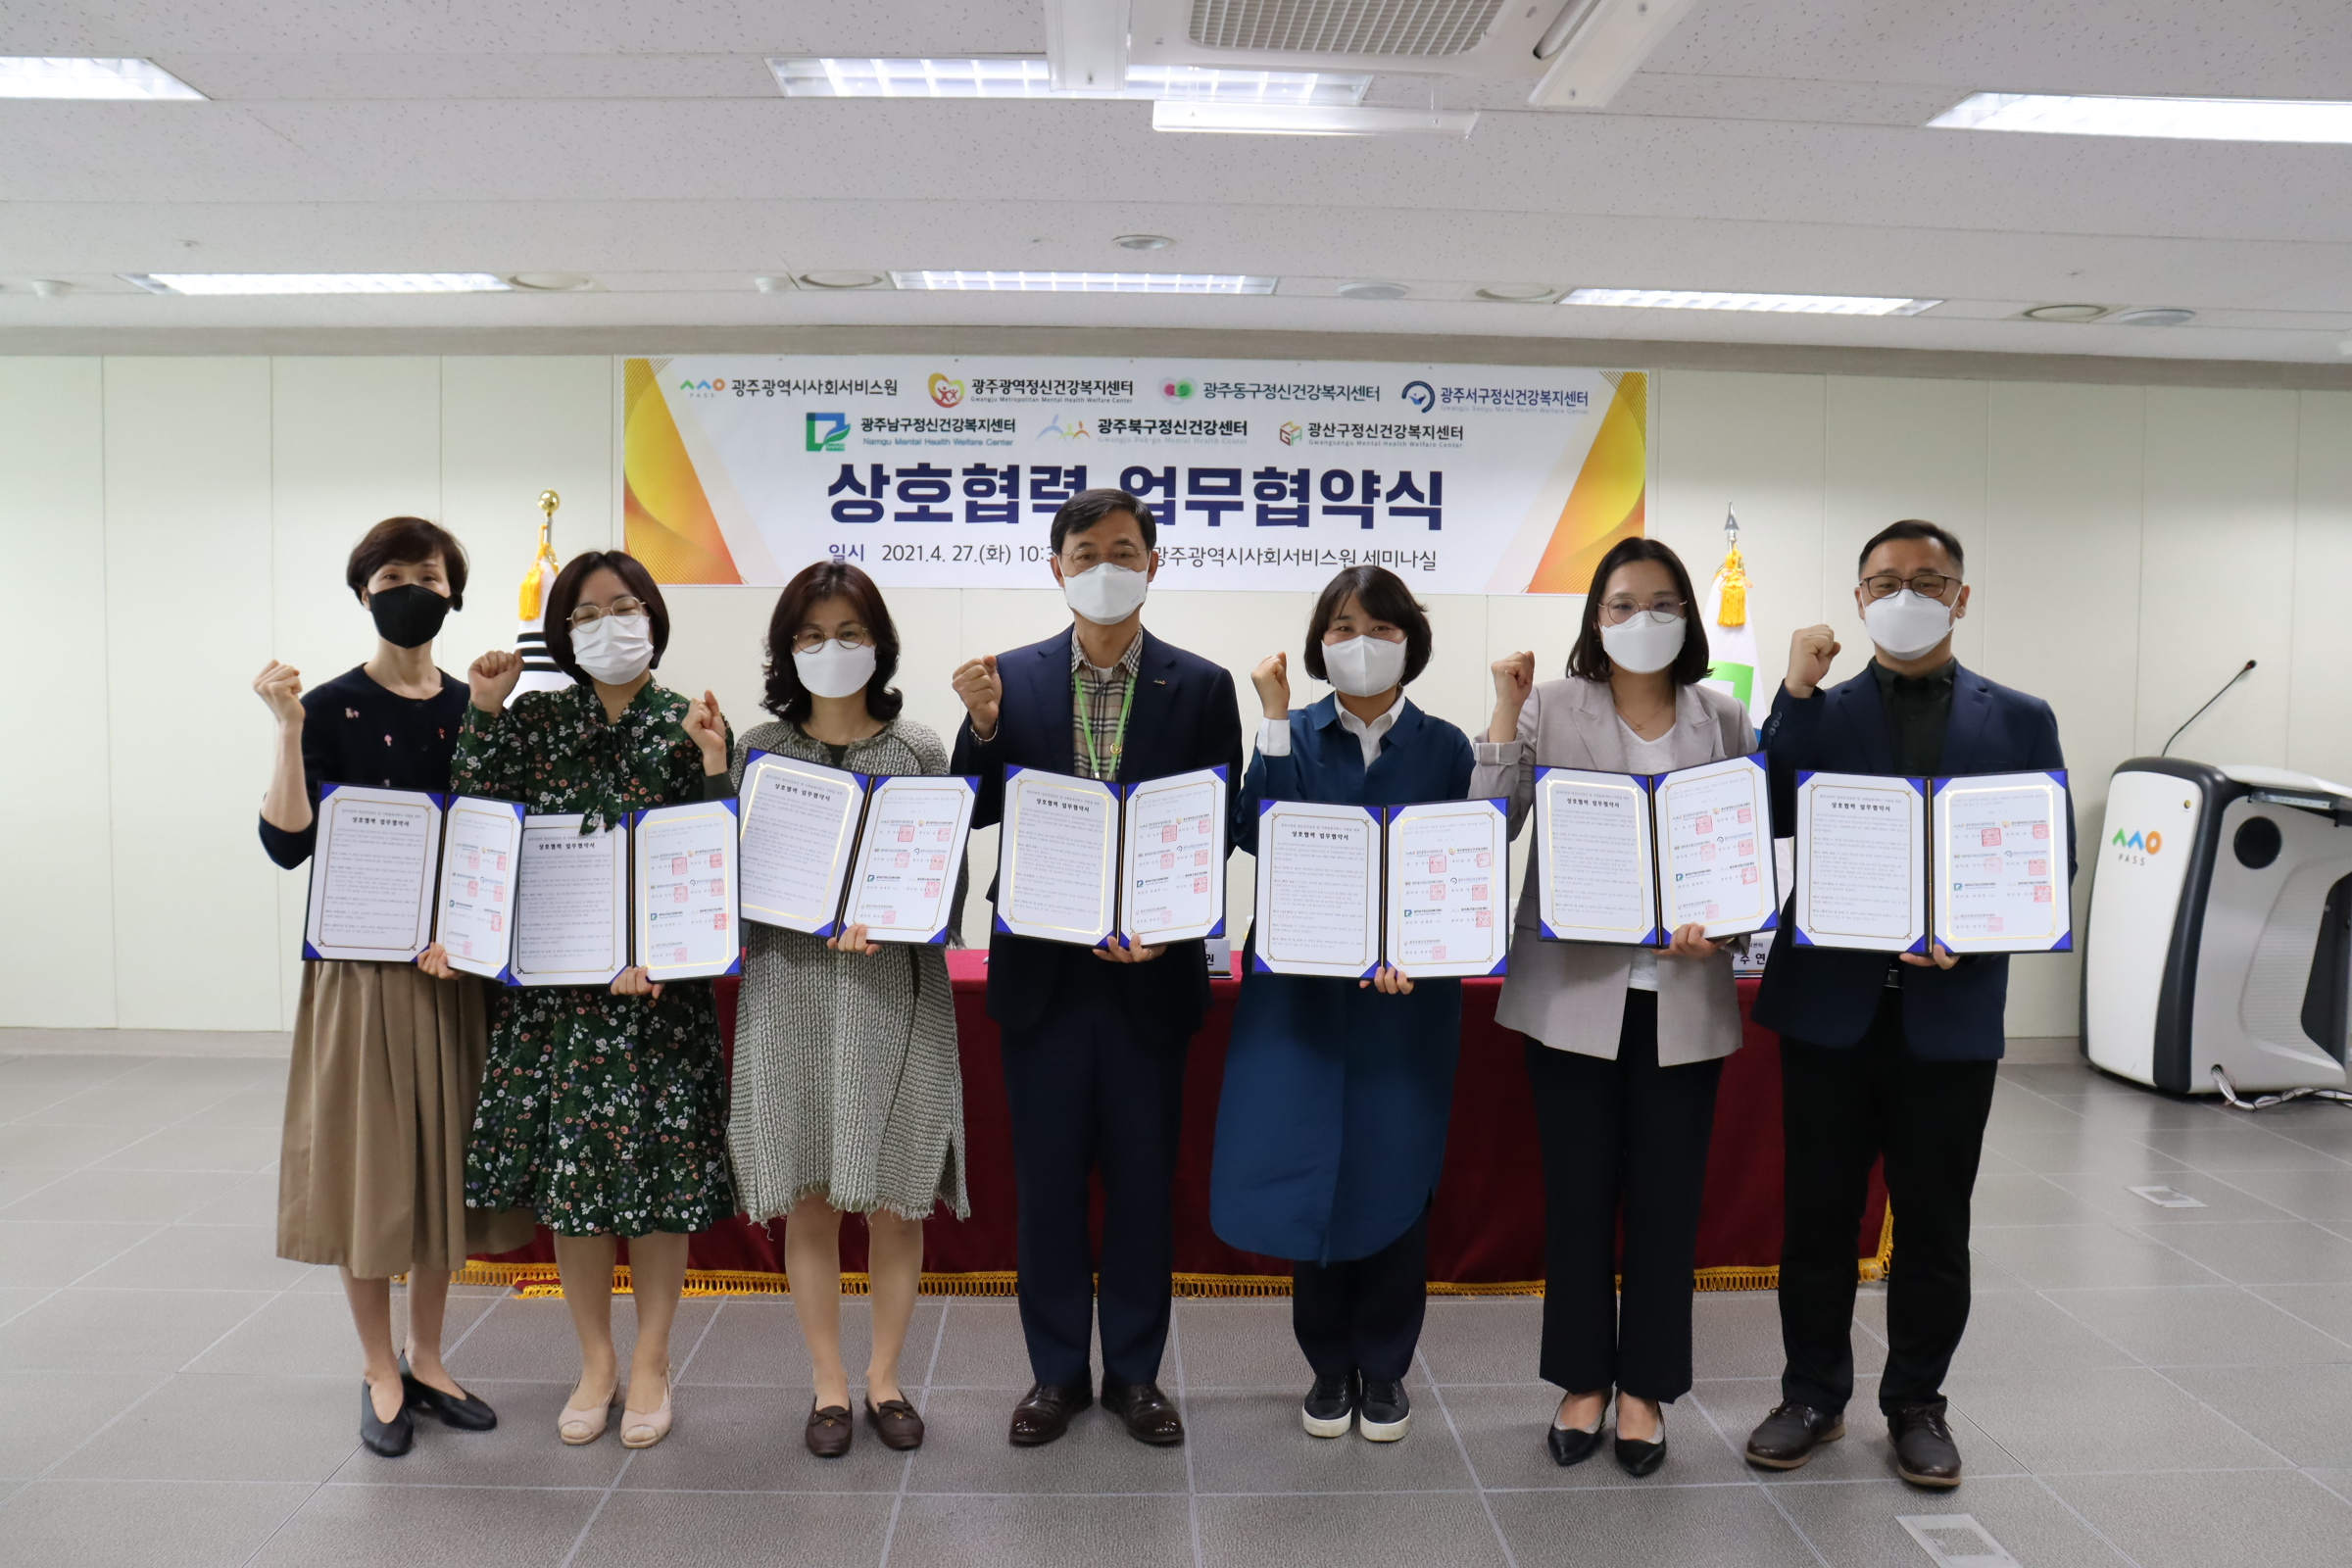 정신건강복지센터(광역, 5개구) 업무협약(21.04.27) 행사사진